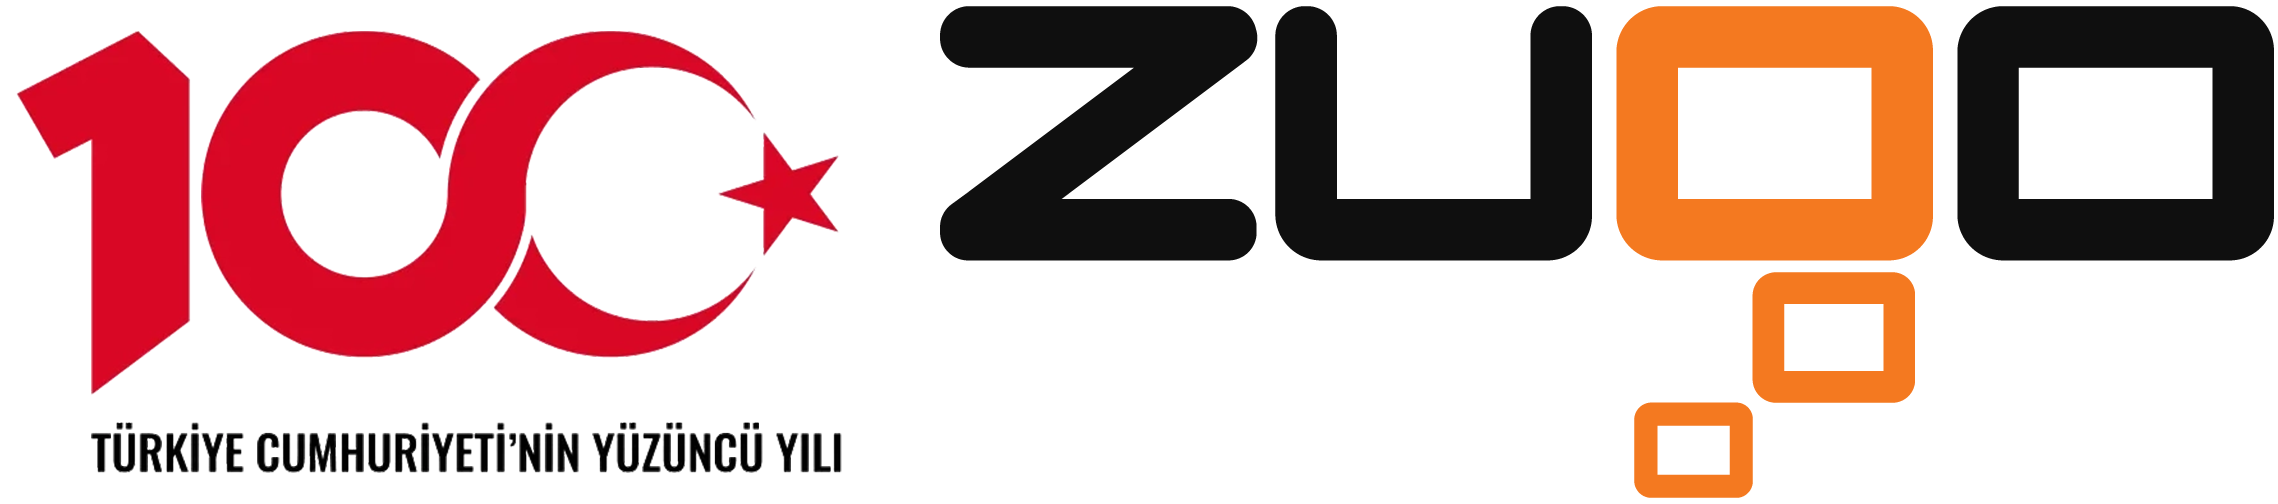 Zugo Bilgi Sistemleri A.Ş. Logo